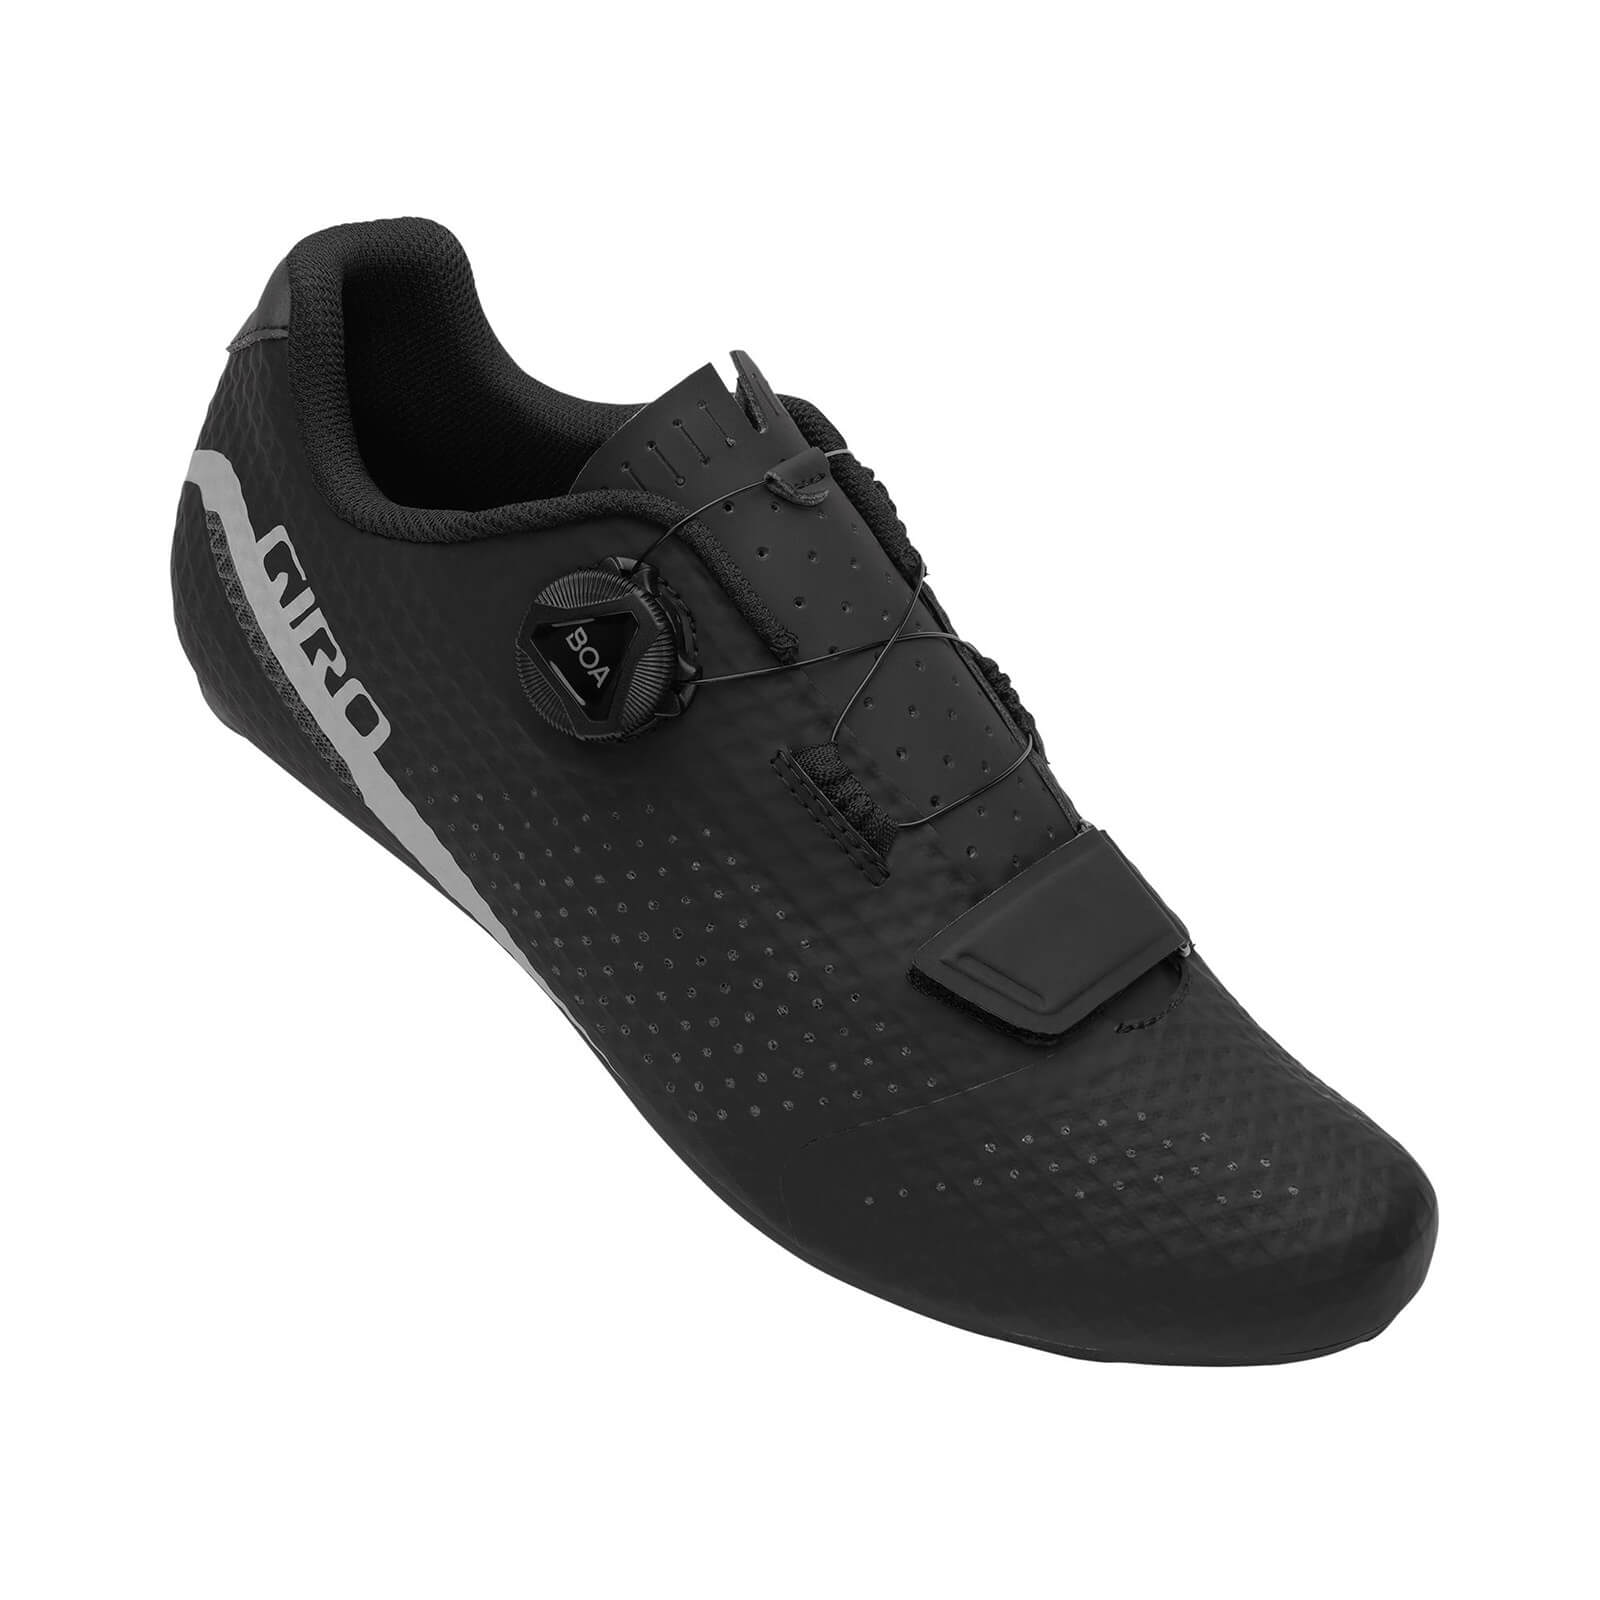 Giro Cadet Road Shoes - EU 45 - Black